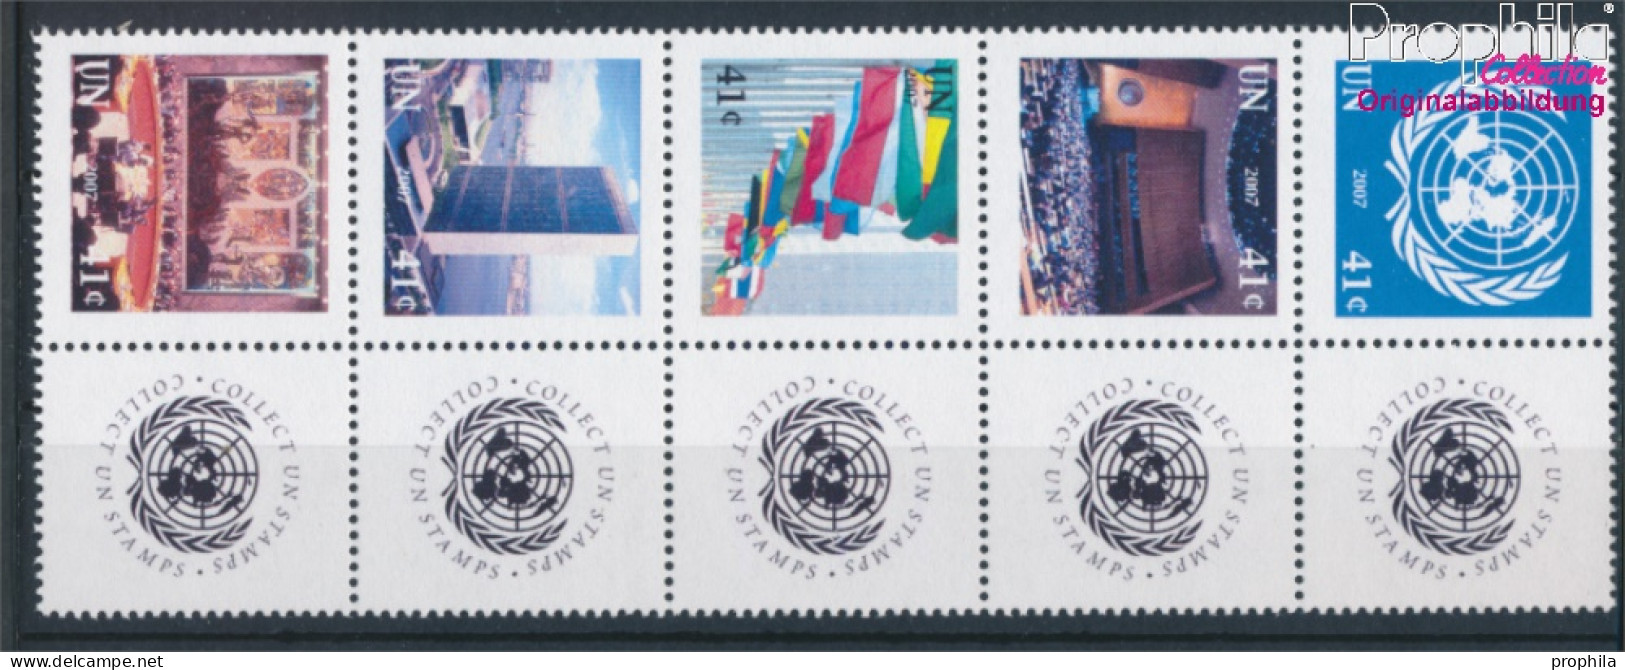 UNO - New York 1057-1061 Zehnerblock (kompl.Ausg.) Postfrisch 2007 Grußmarken (10325901 - Unused Stamps